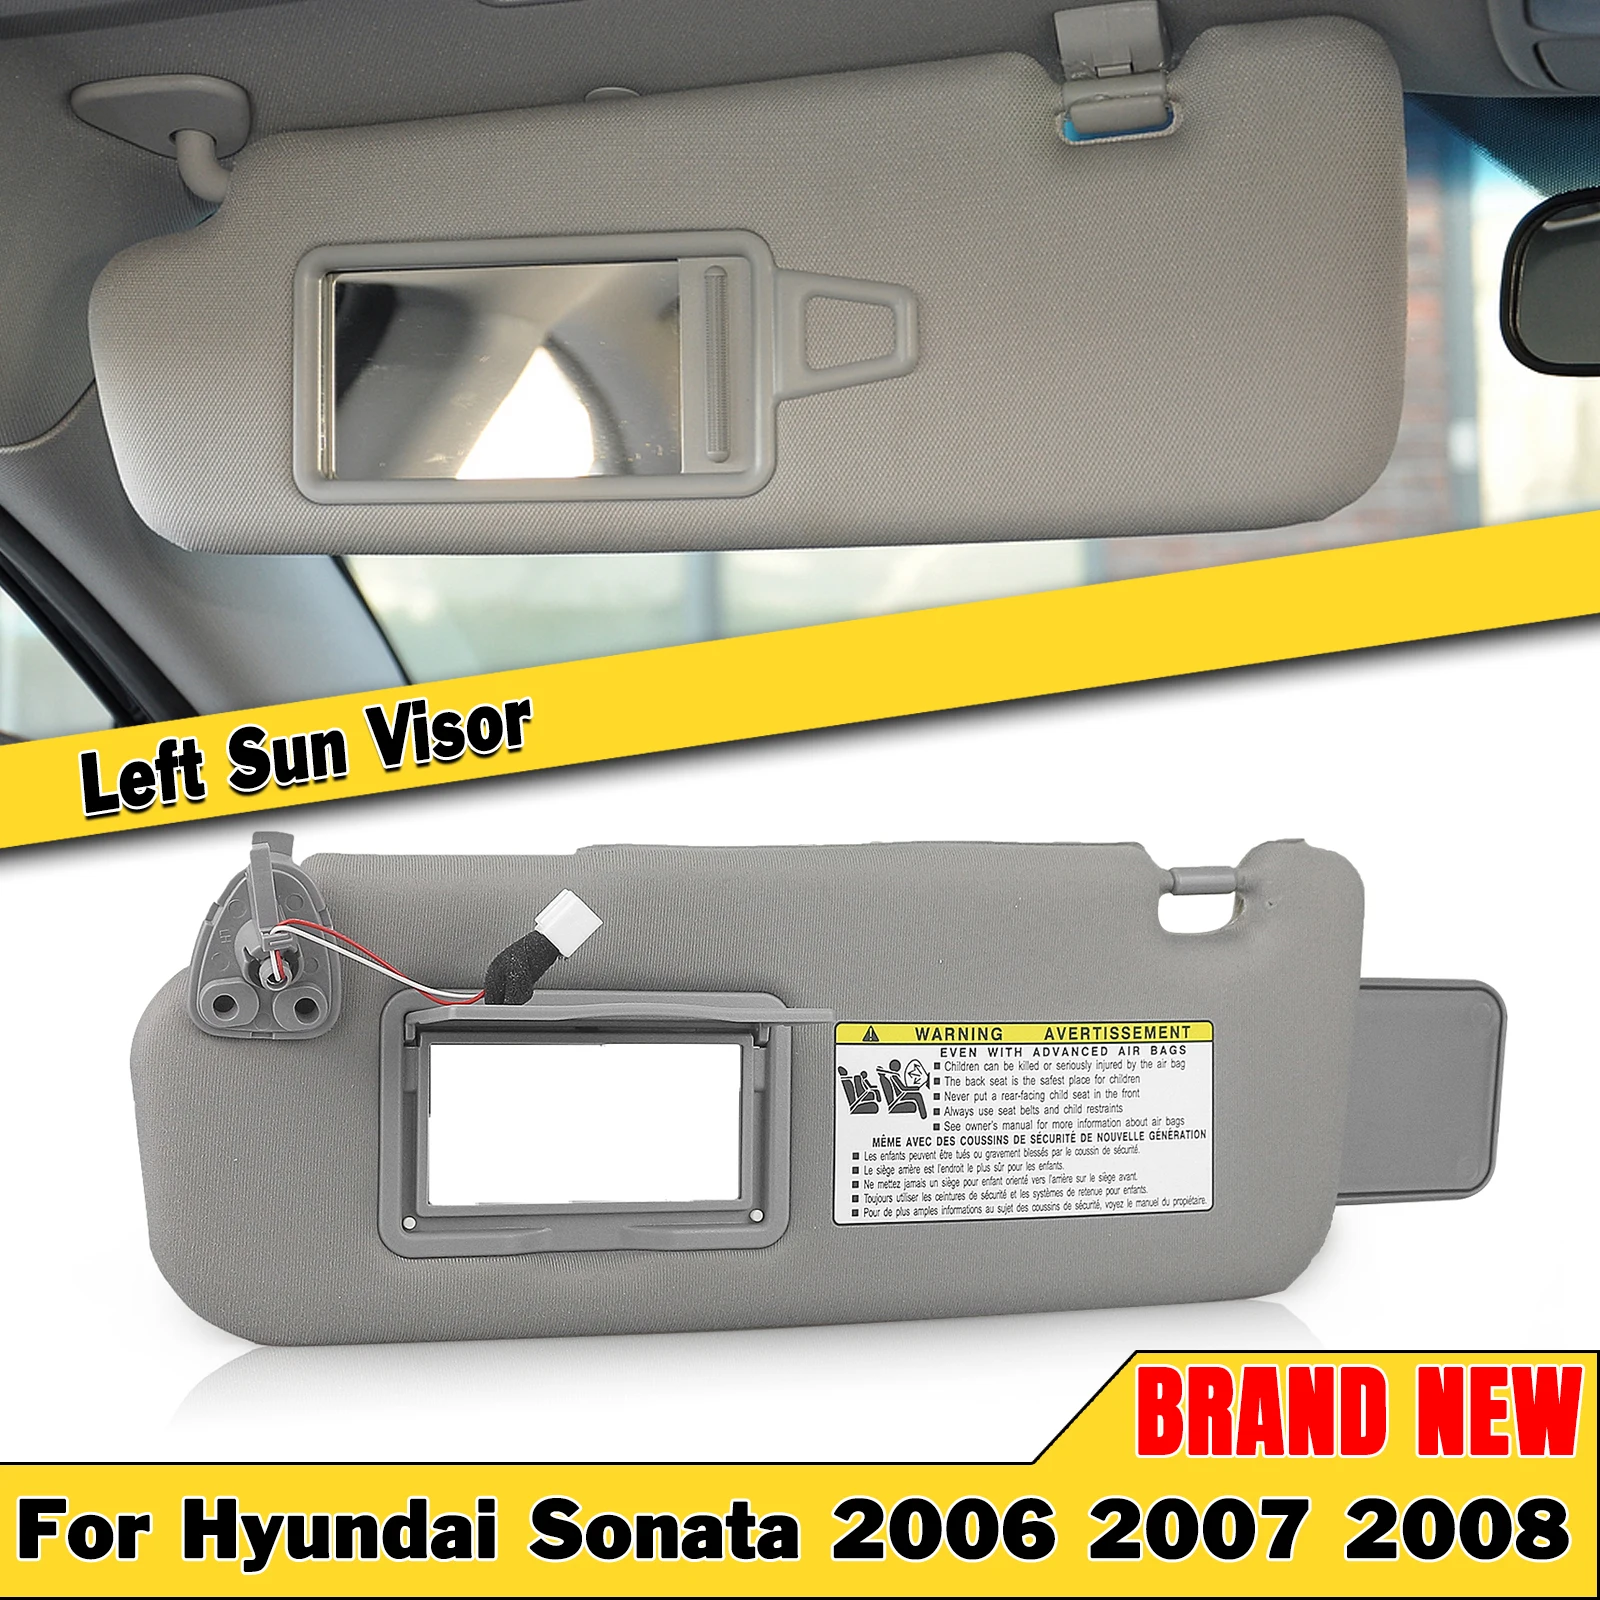 

Солнцезащитный козырек для Hyundai Sonata 2005-2010, серый, левый, для водителя, для переднего стекла автомобиля, защитный козырек для лобового стекла, солнцезащитный козырек